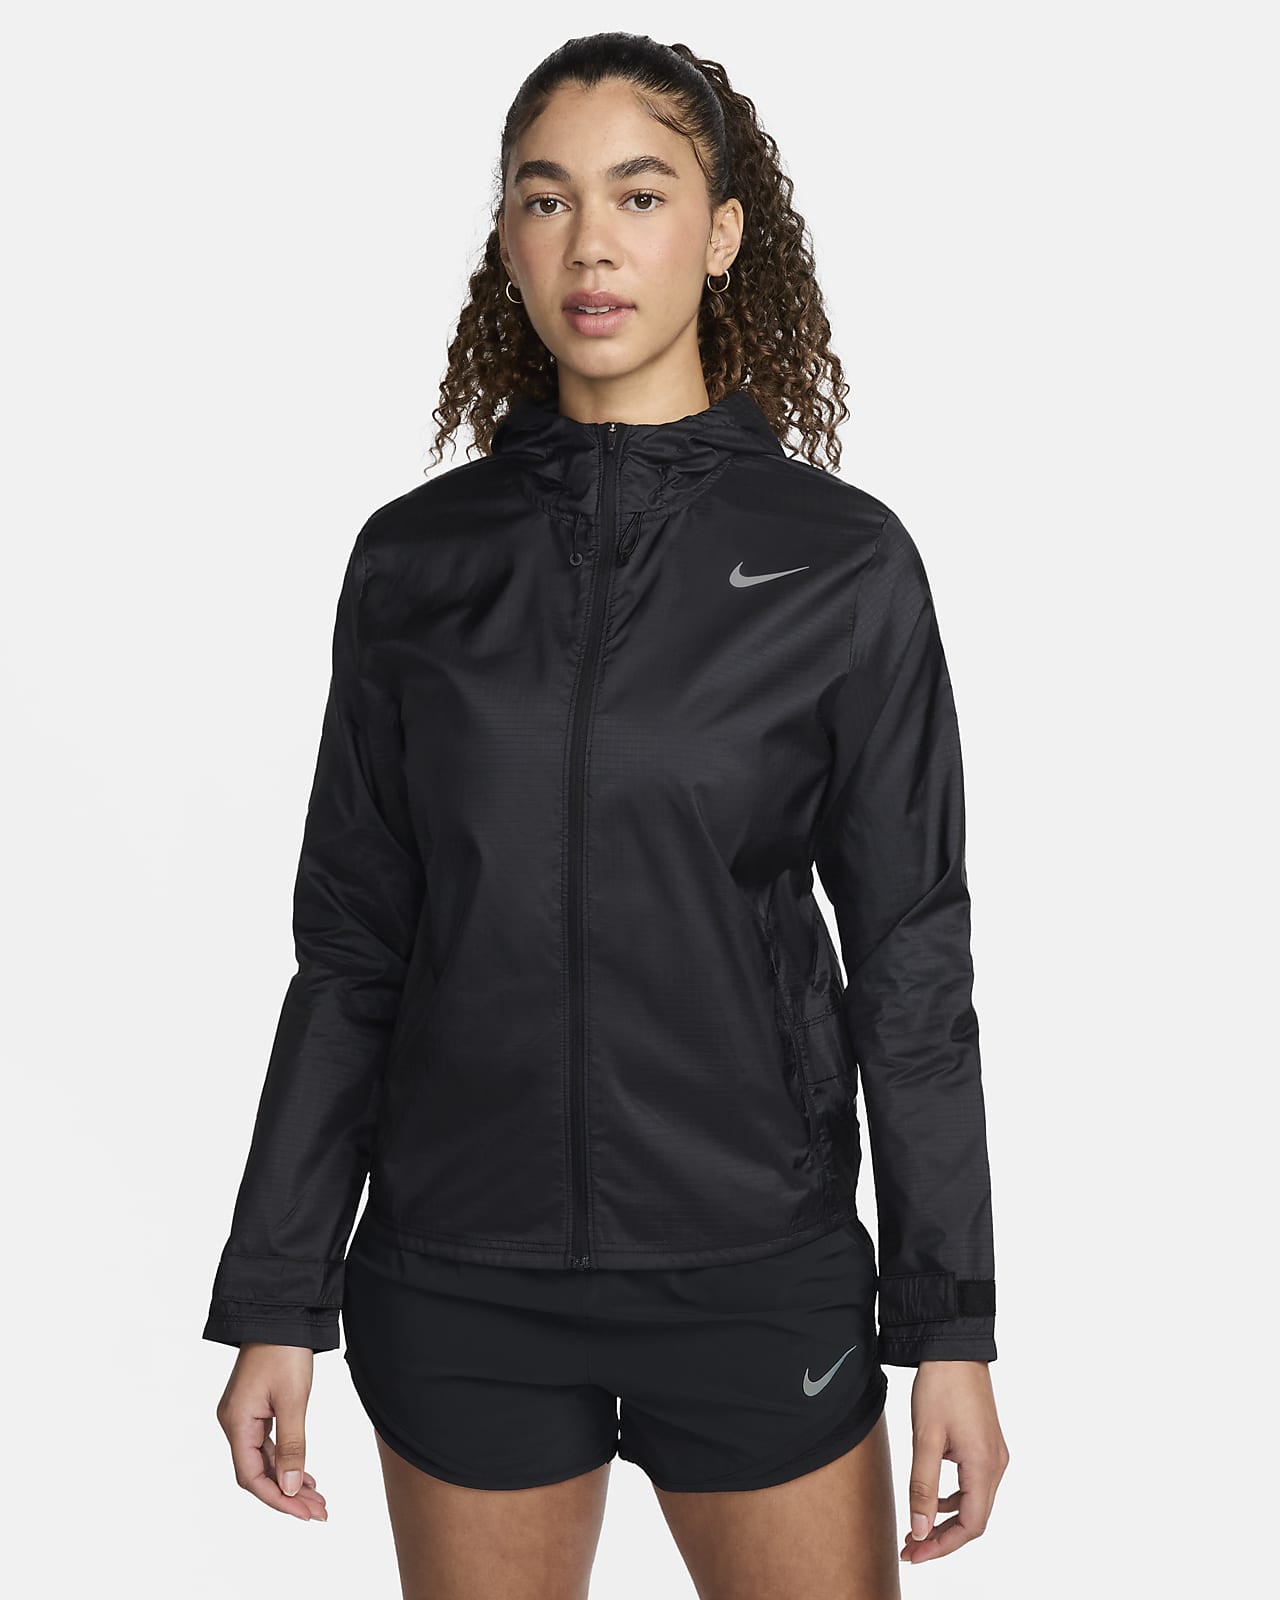 Running Jacket. Nike LU